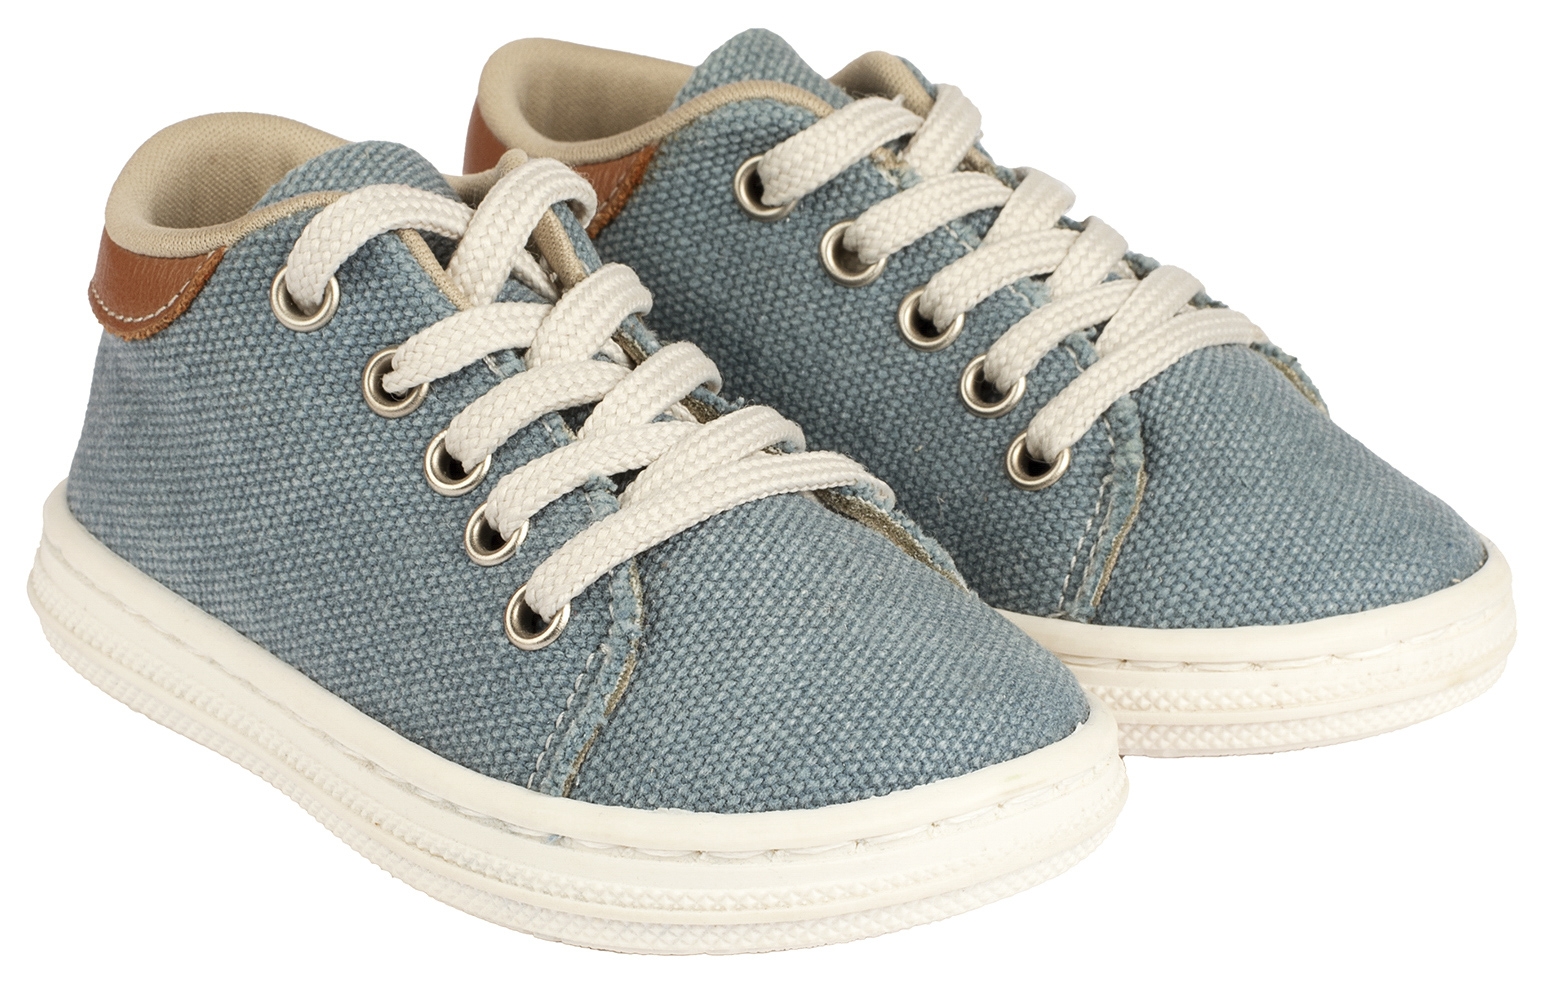 Babywalker Sneaker Canvas Σιέλ - Βαπτιστικά παπούτσια για αγόρι